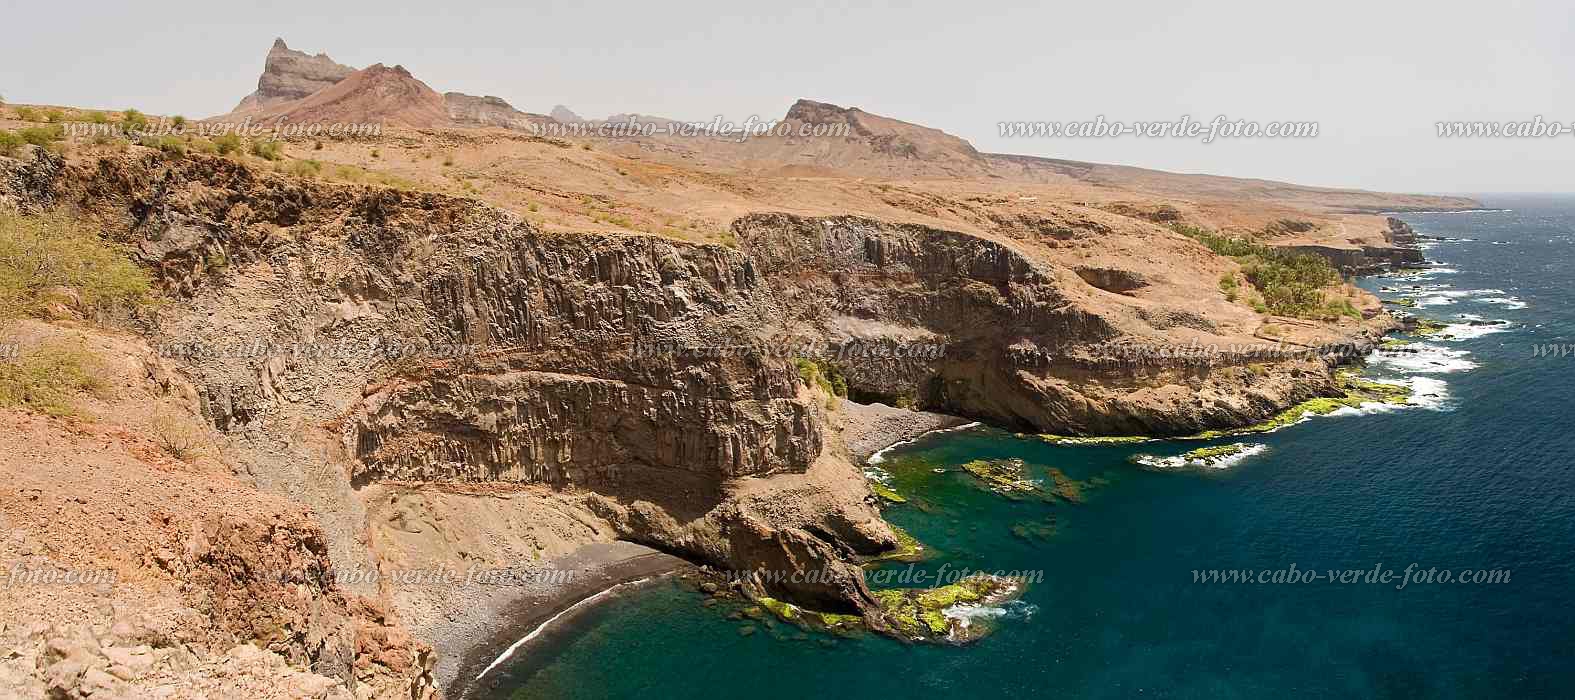 Santiago :  : coast : Landscape SeaCabo Verde Foto Gallery